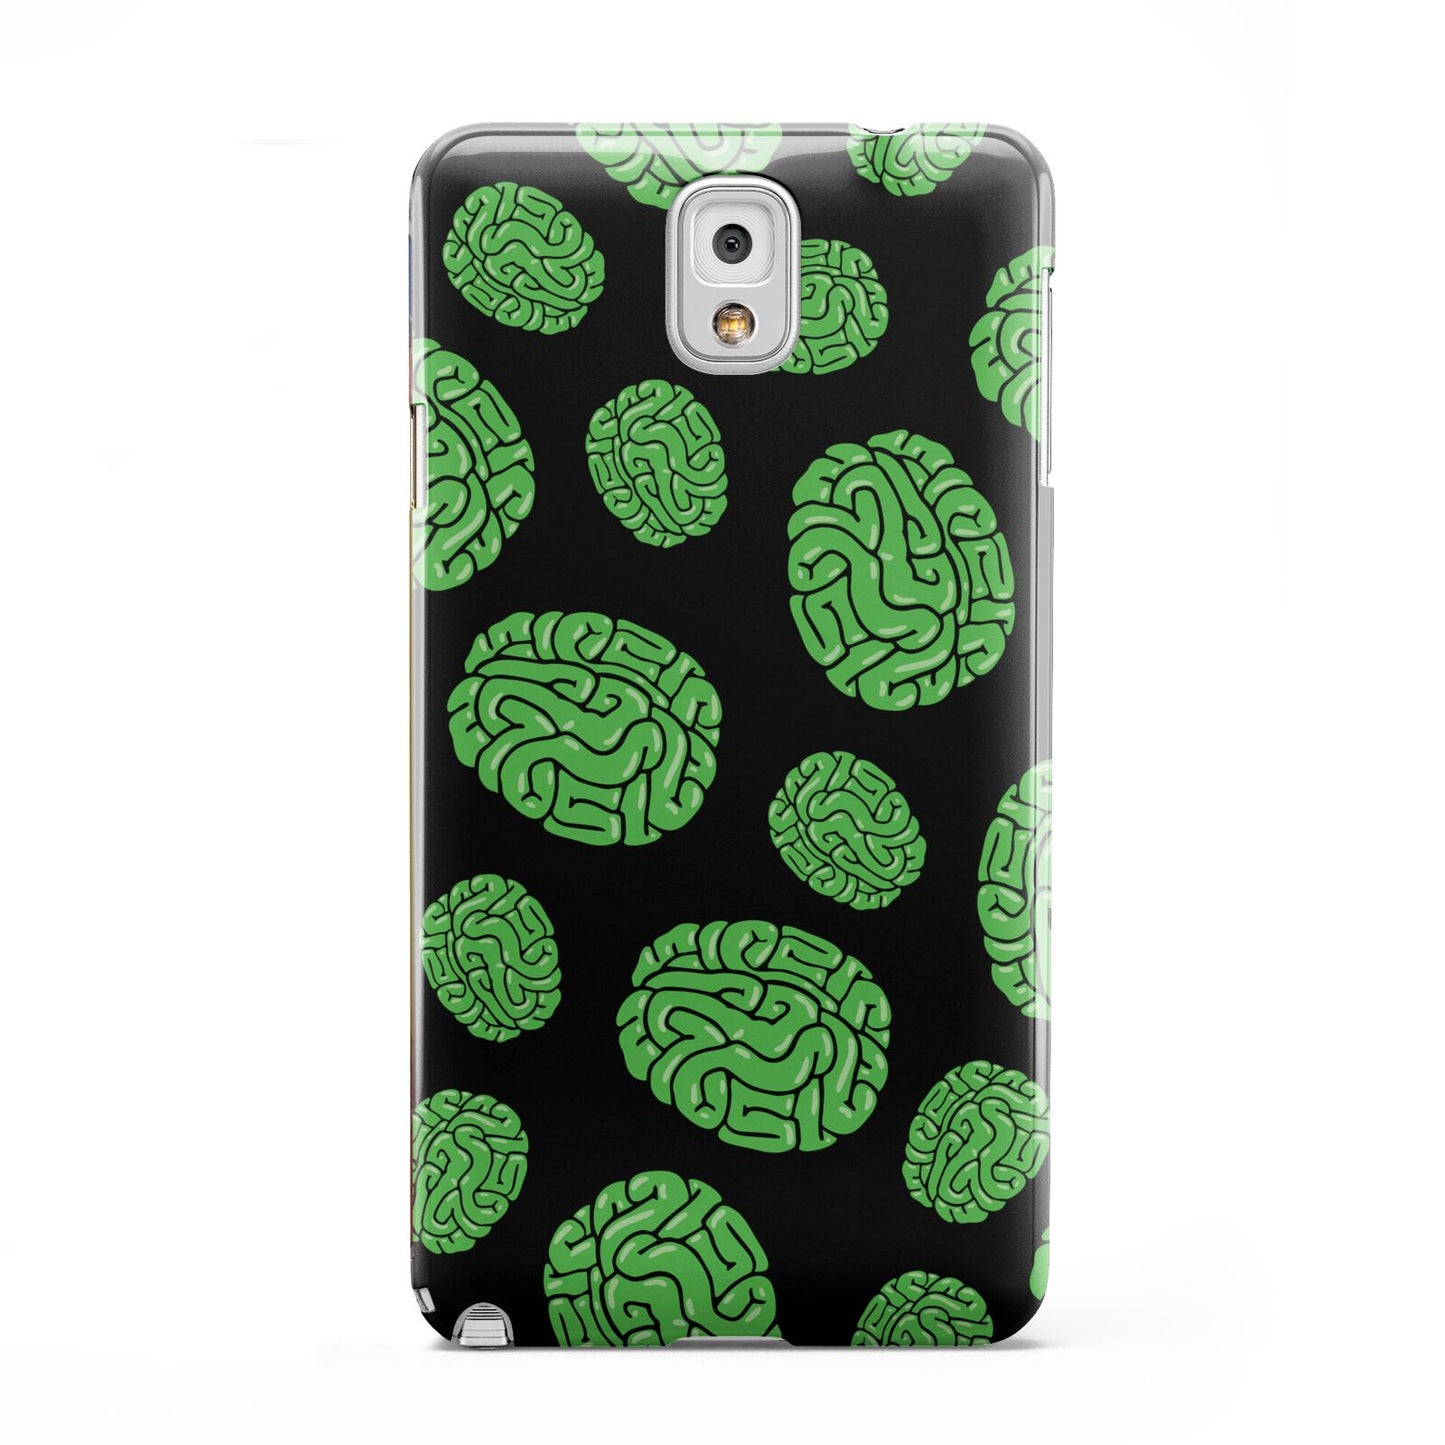 Green Brains Samsung Galaxy Note 3 Case